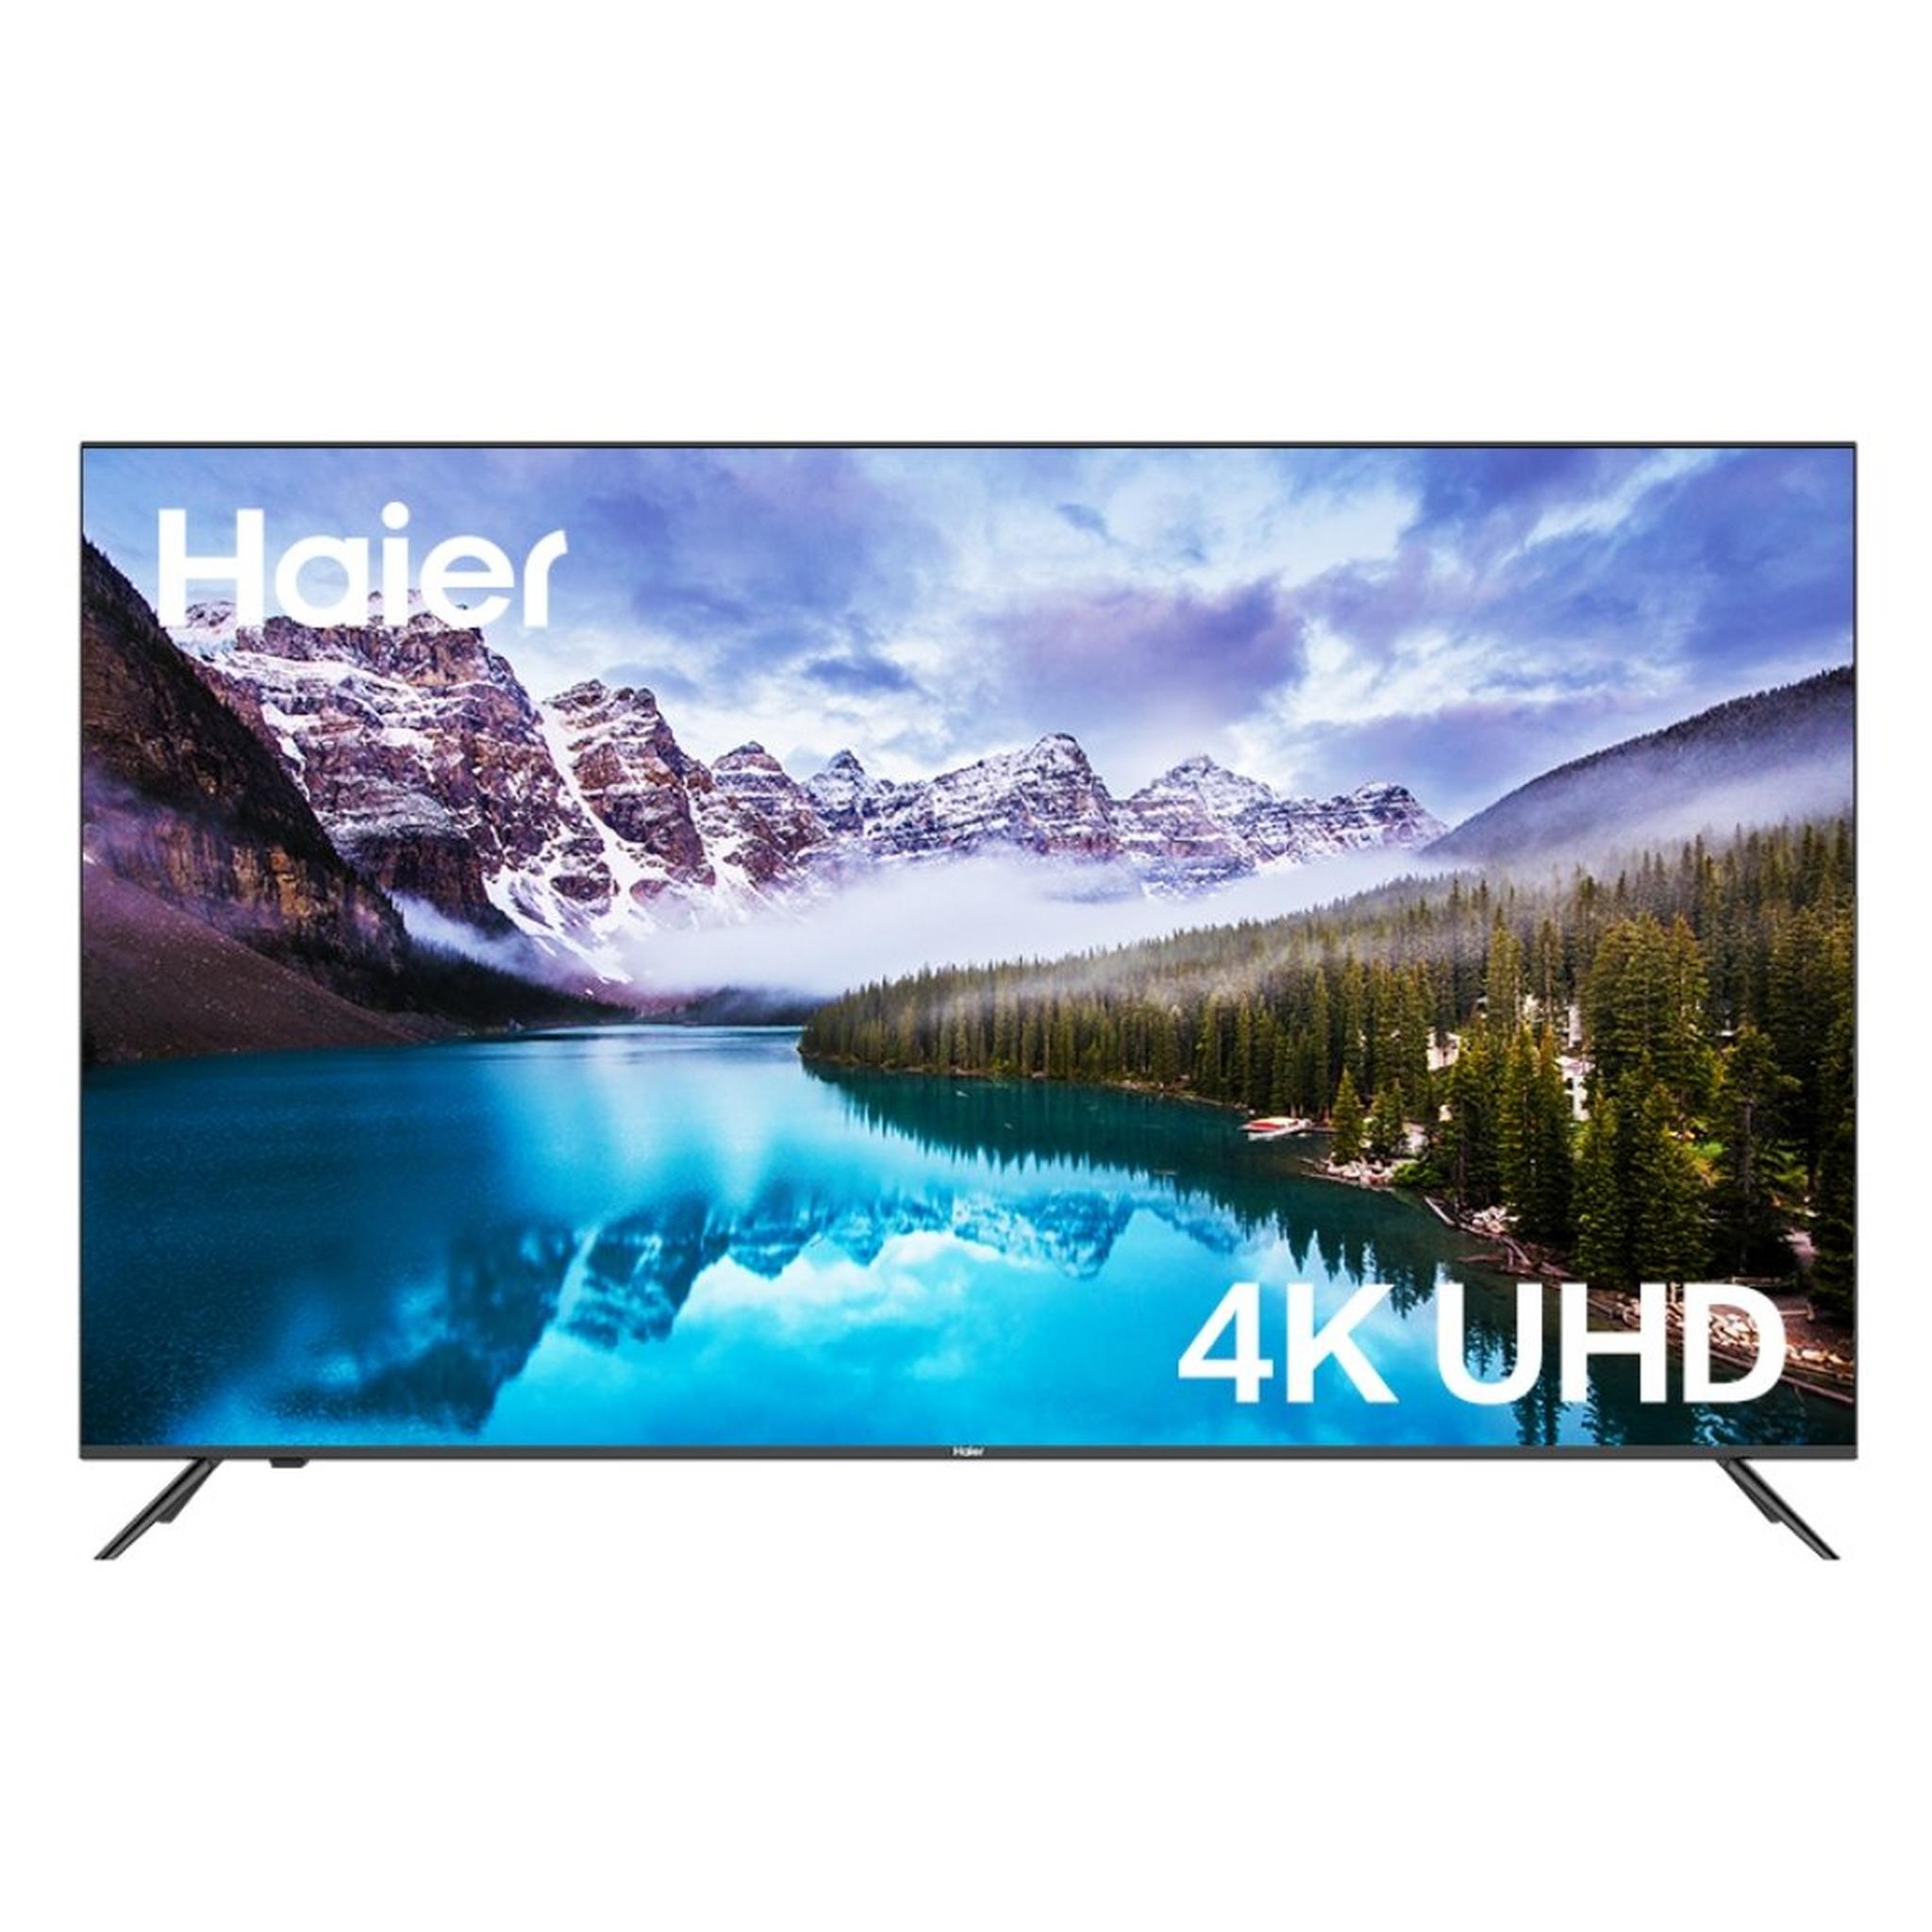 Haier Smart LED TV 4K 65 Inch (H65K5UG)